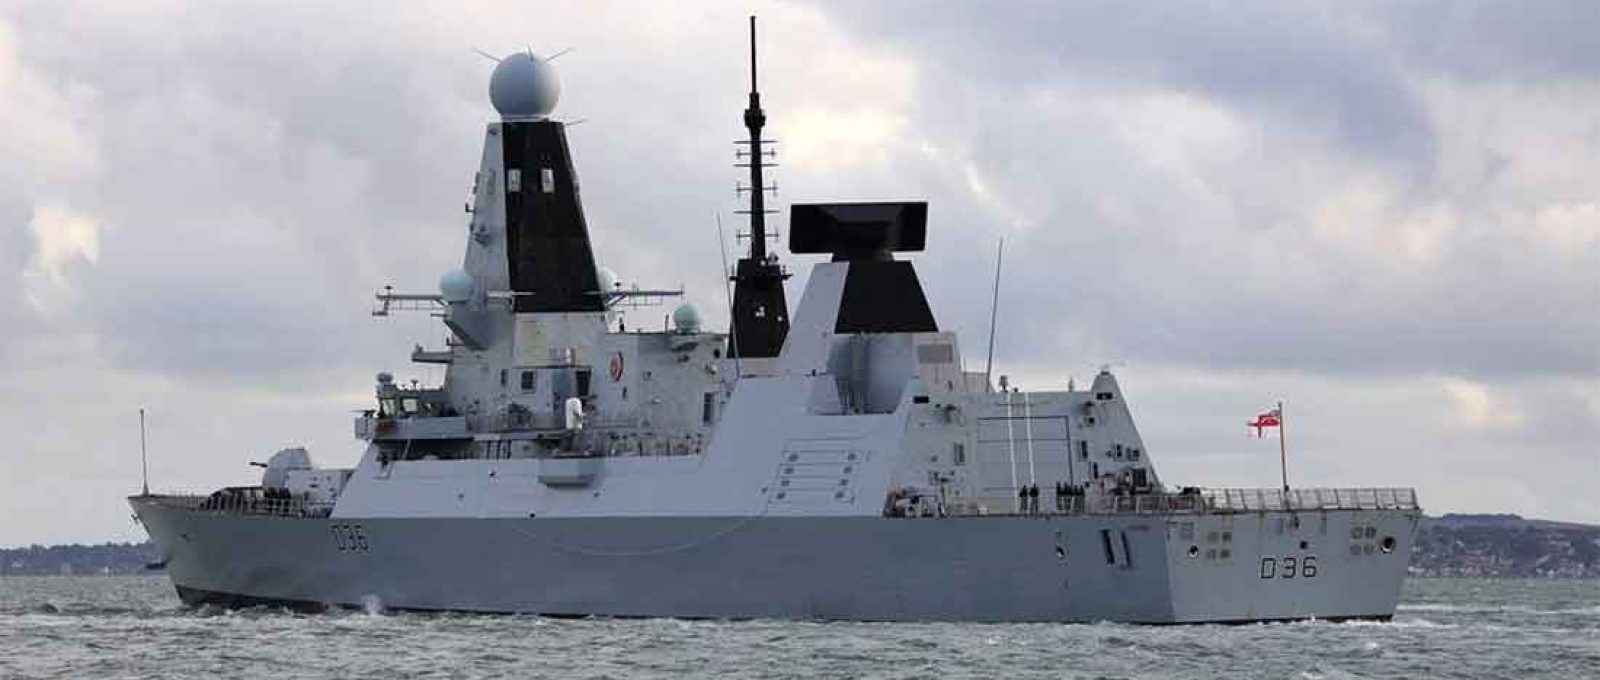 O contratorpedeiro britânico HMS Defender (Foto: Kevin Shipp/Shutterstock).